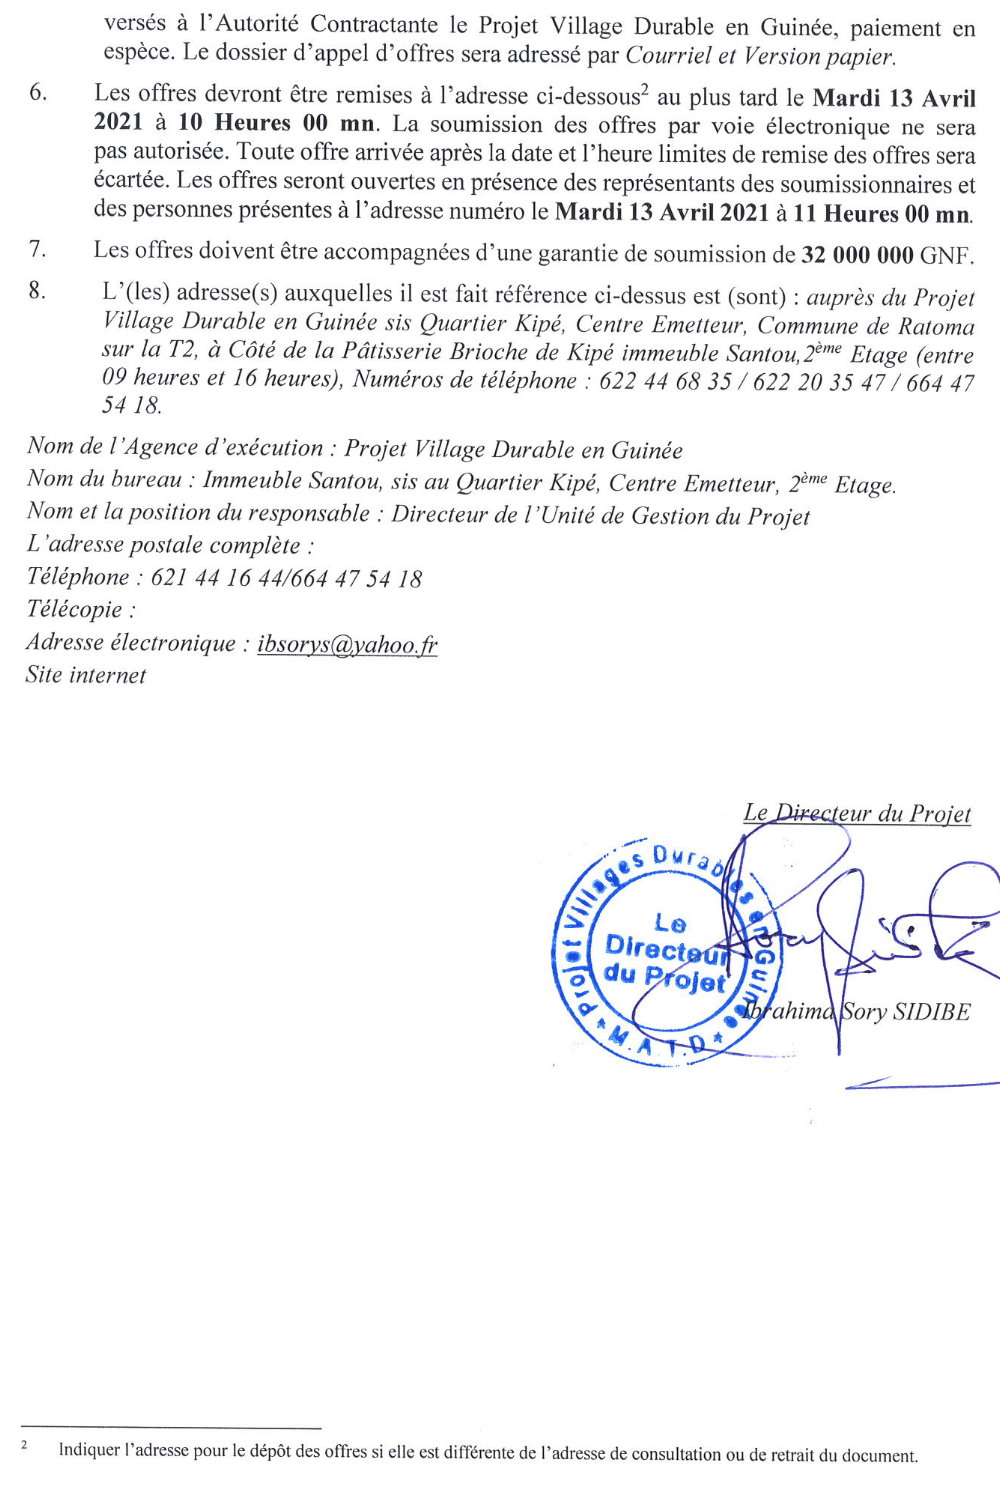 Appels d'offres en guinée conakry - villages d'enfants p2